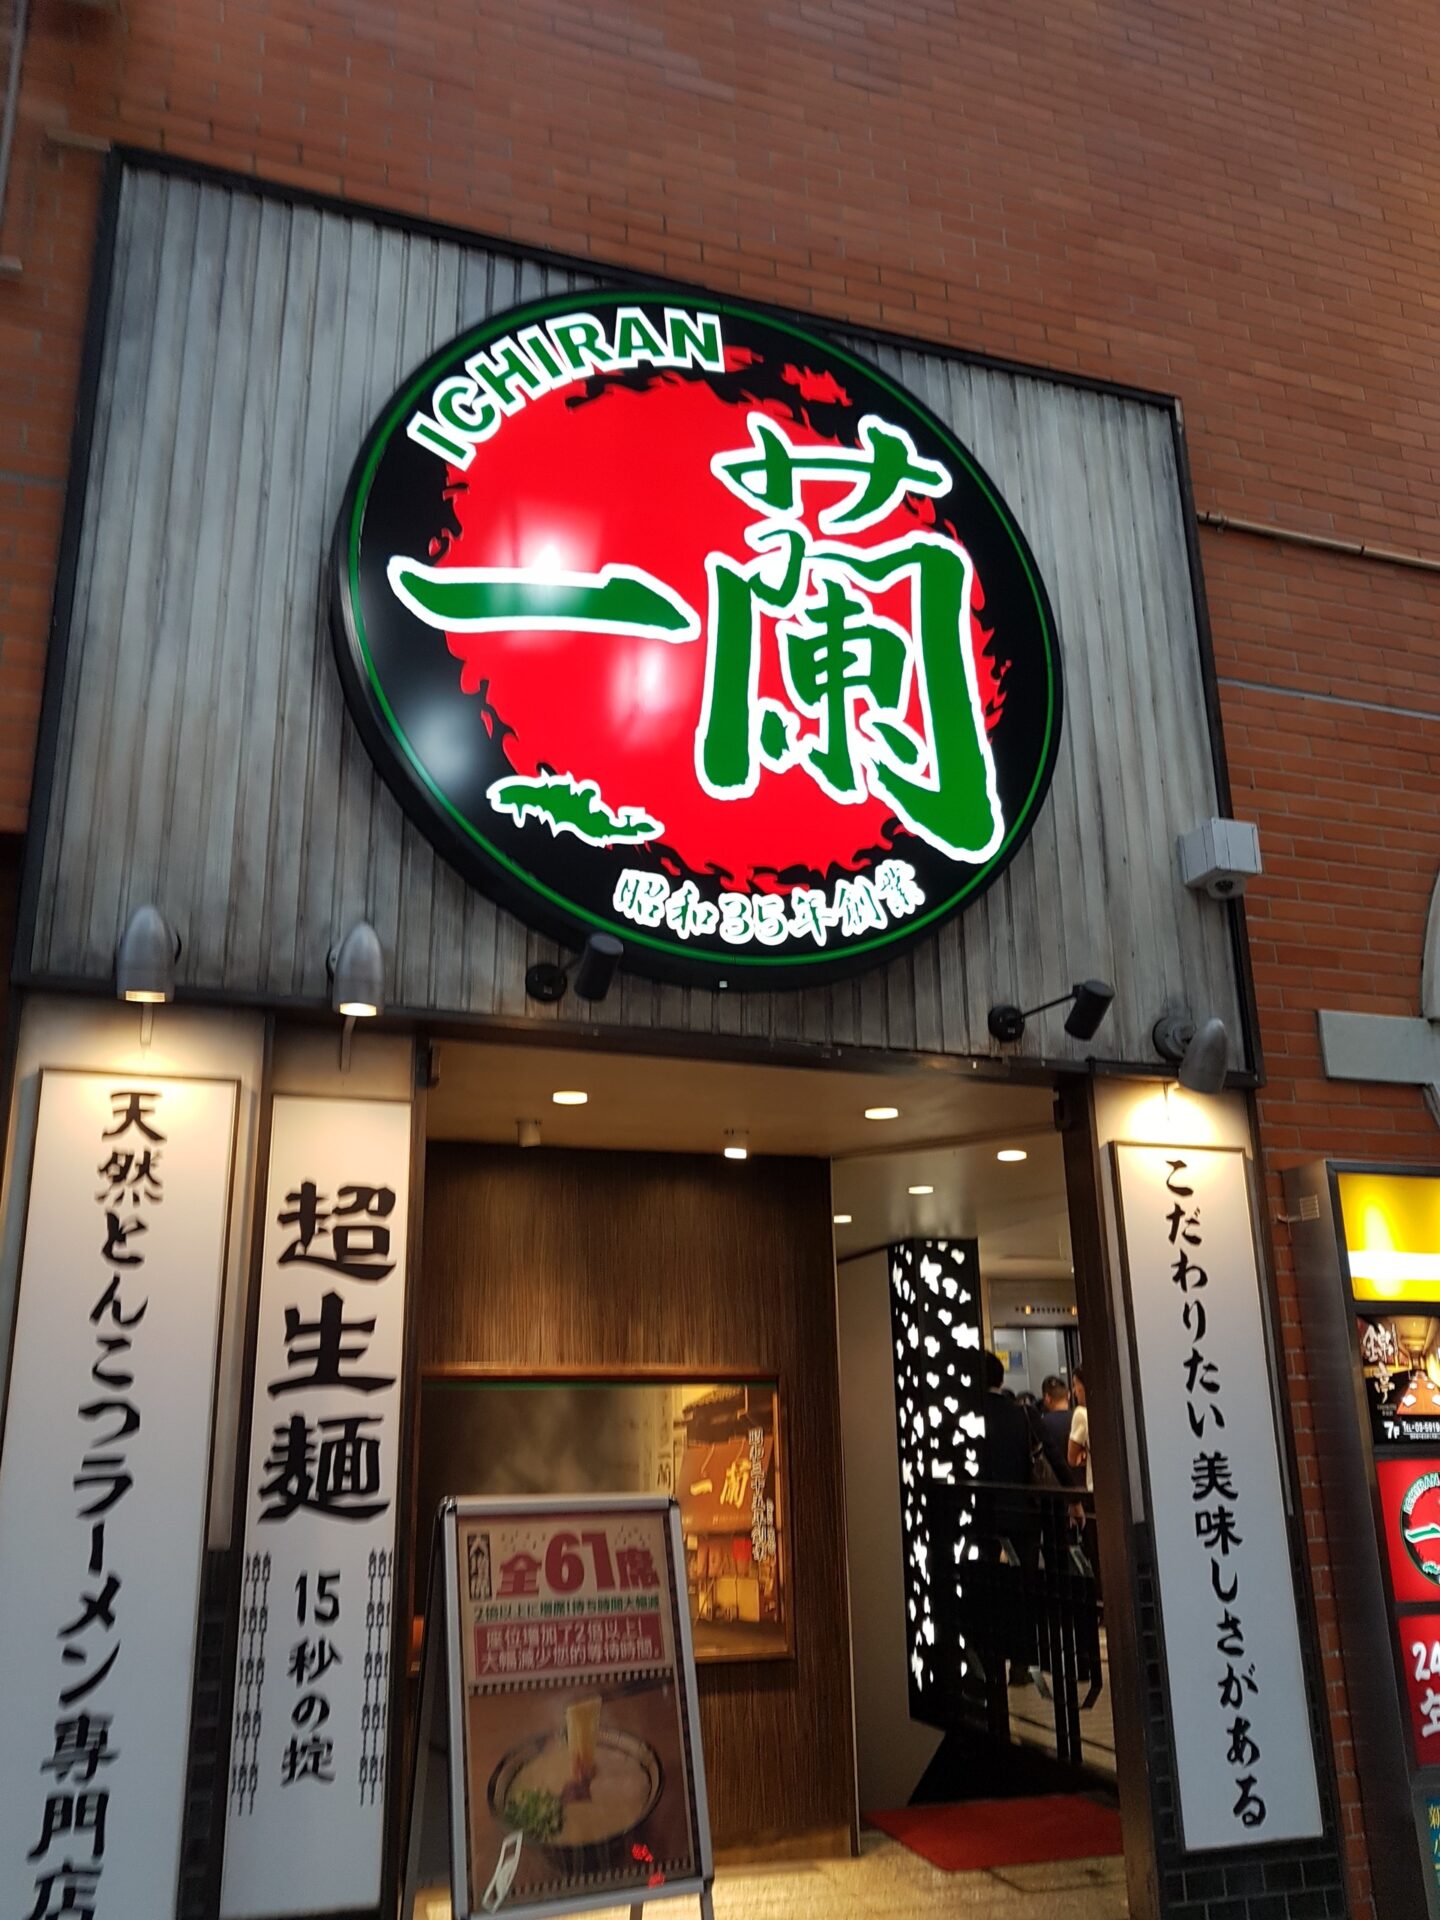 Ichiran Ramen (Shinjuku) Food Review | Erasmus blog Tokyo, Japan